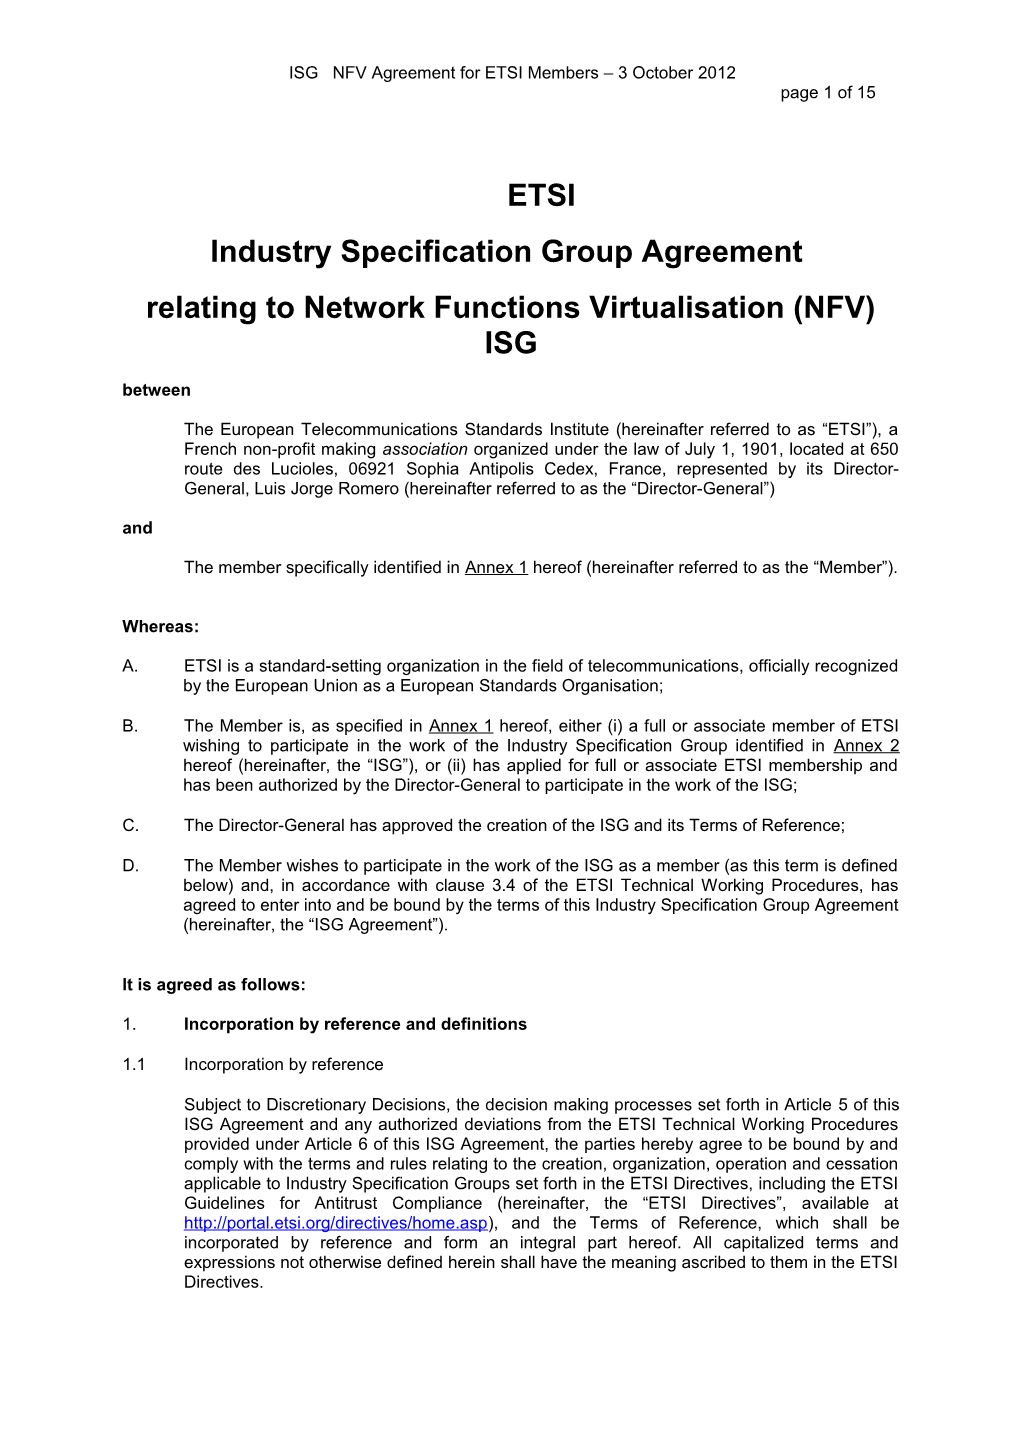 ISG Agreement for ETSI Members